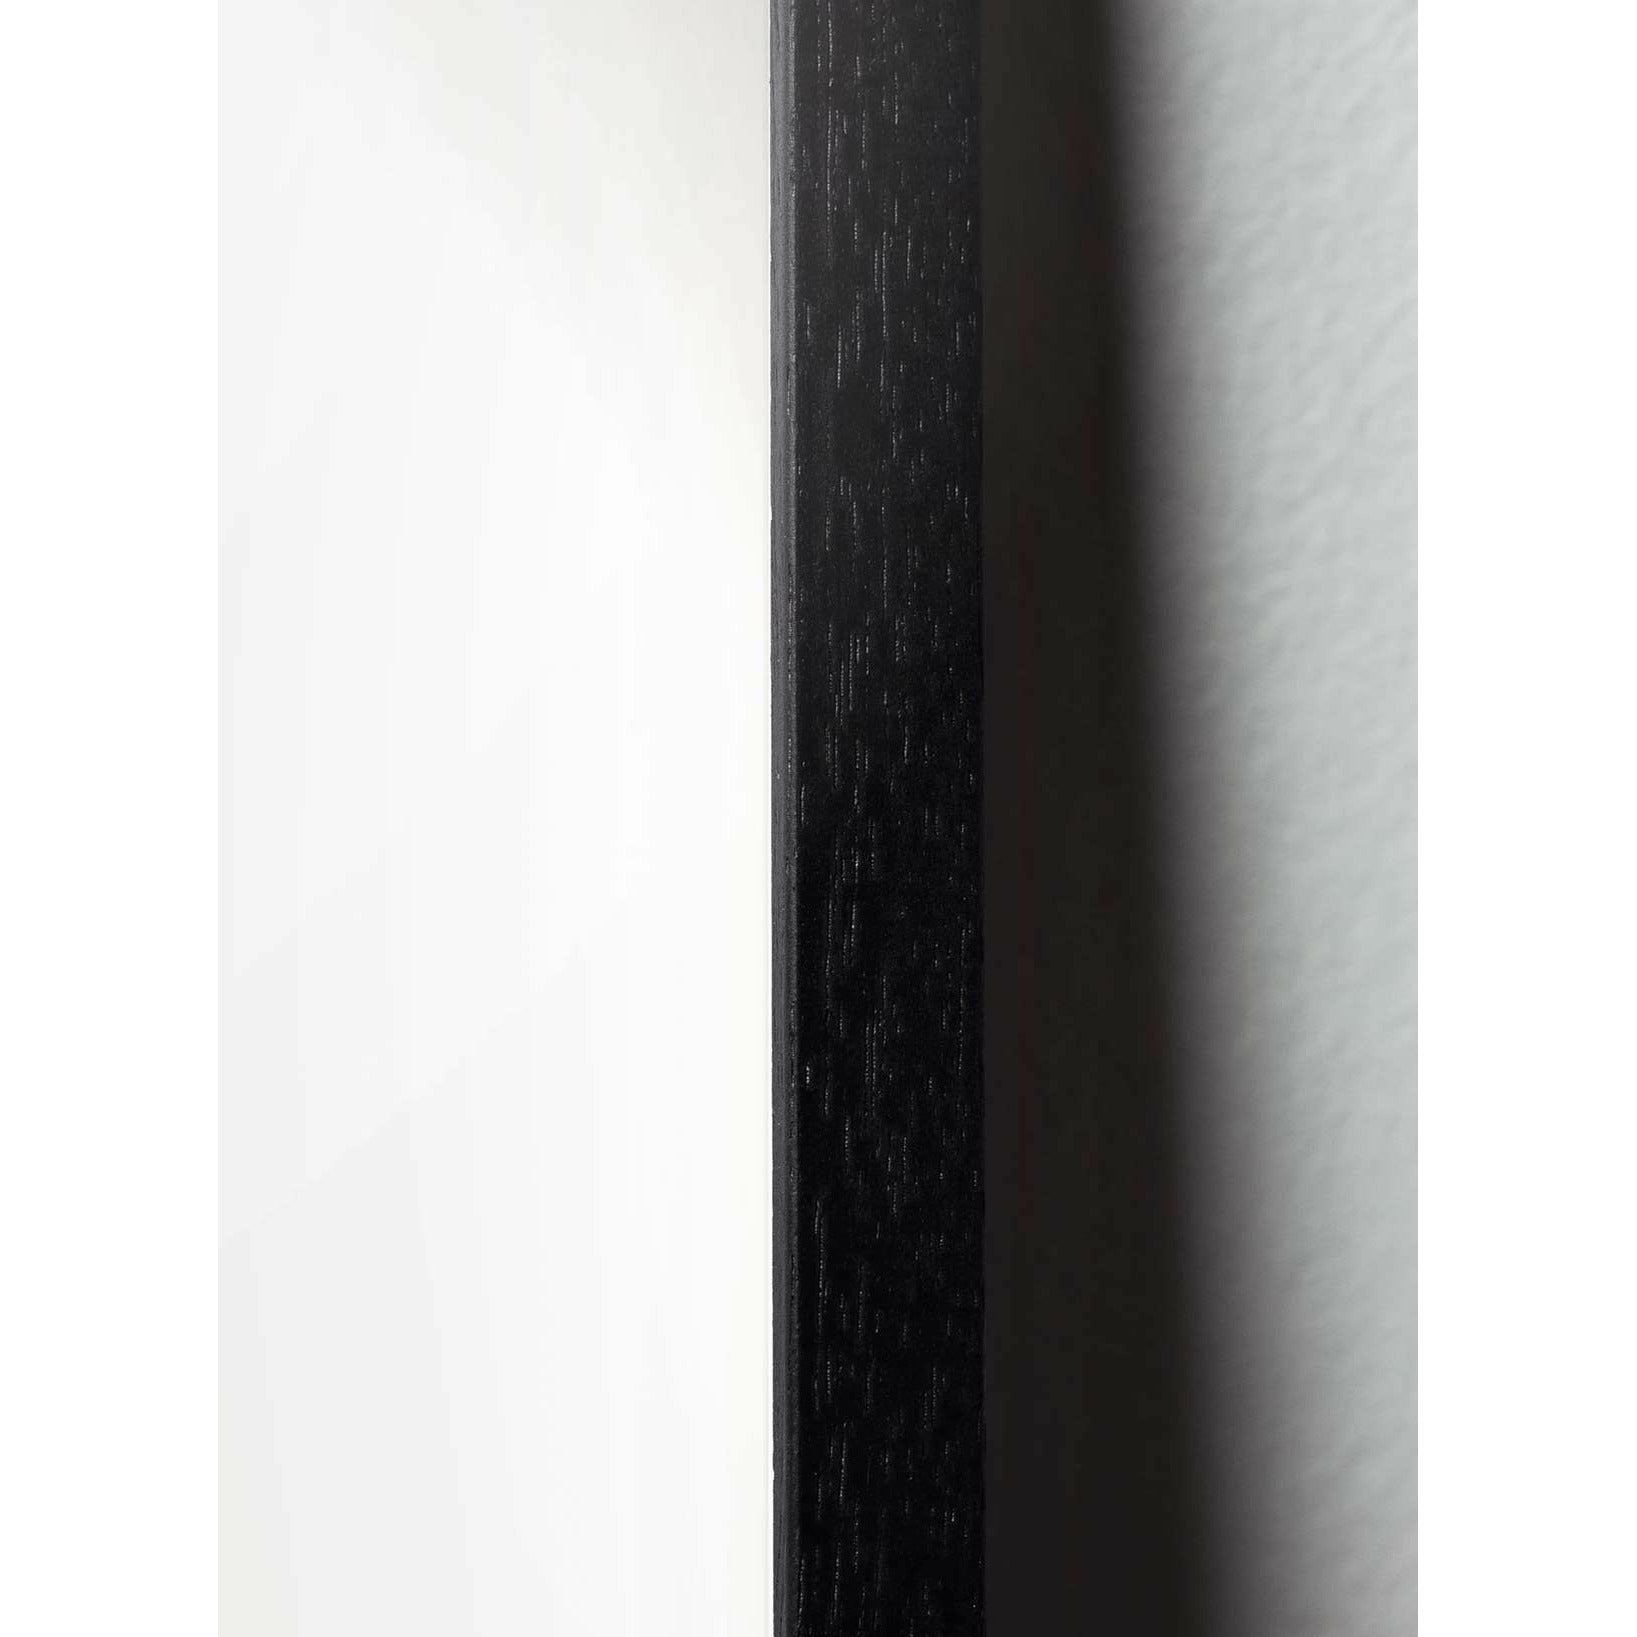 Pomysły plakat klipu na papierze łabędzia, rama w czarnym lakierowanym drewnie A5, różowe tło